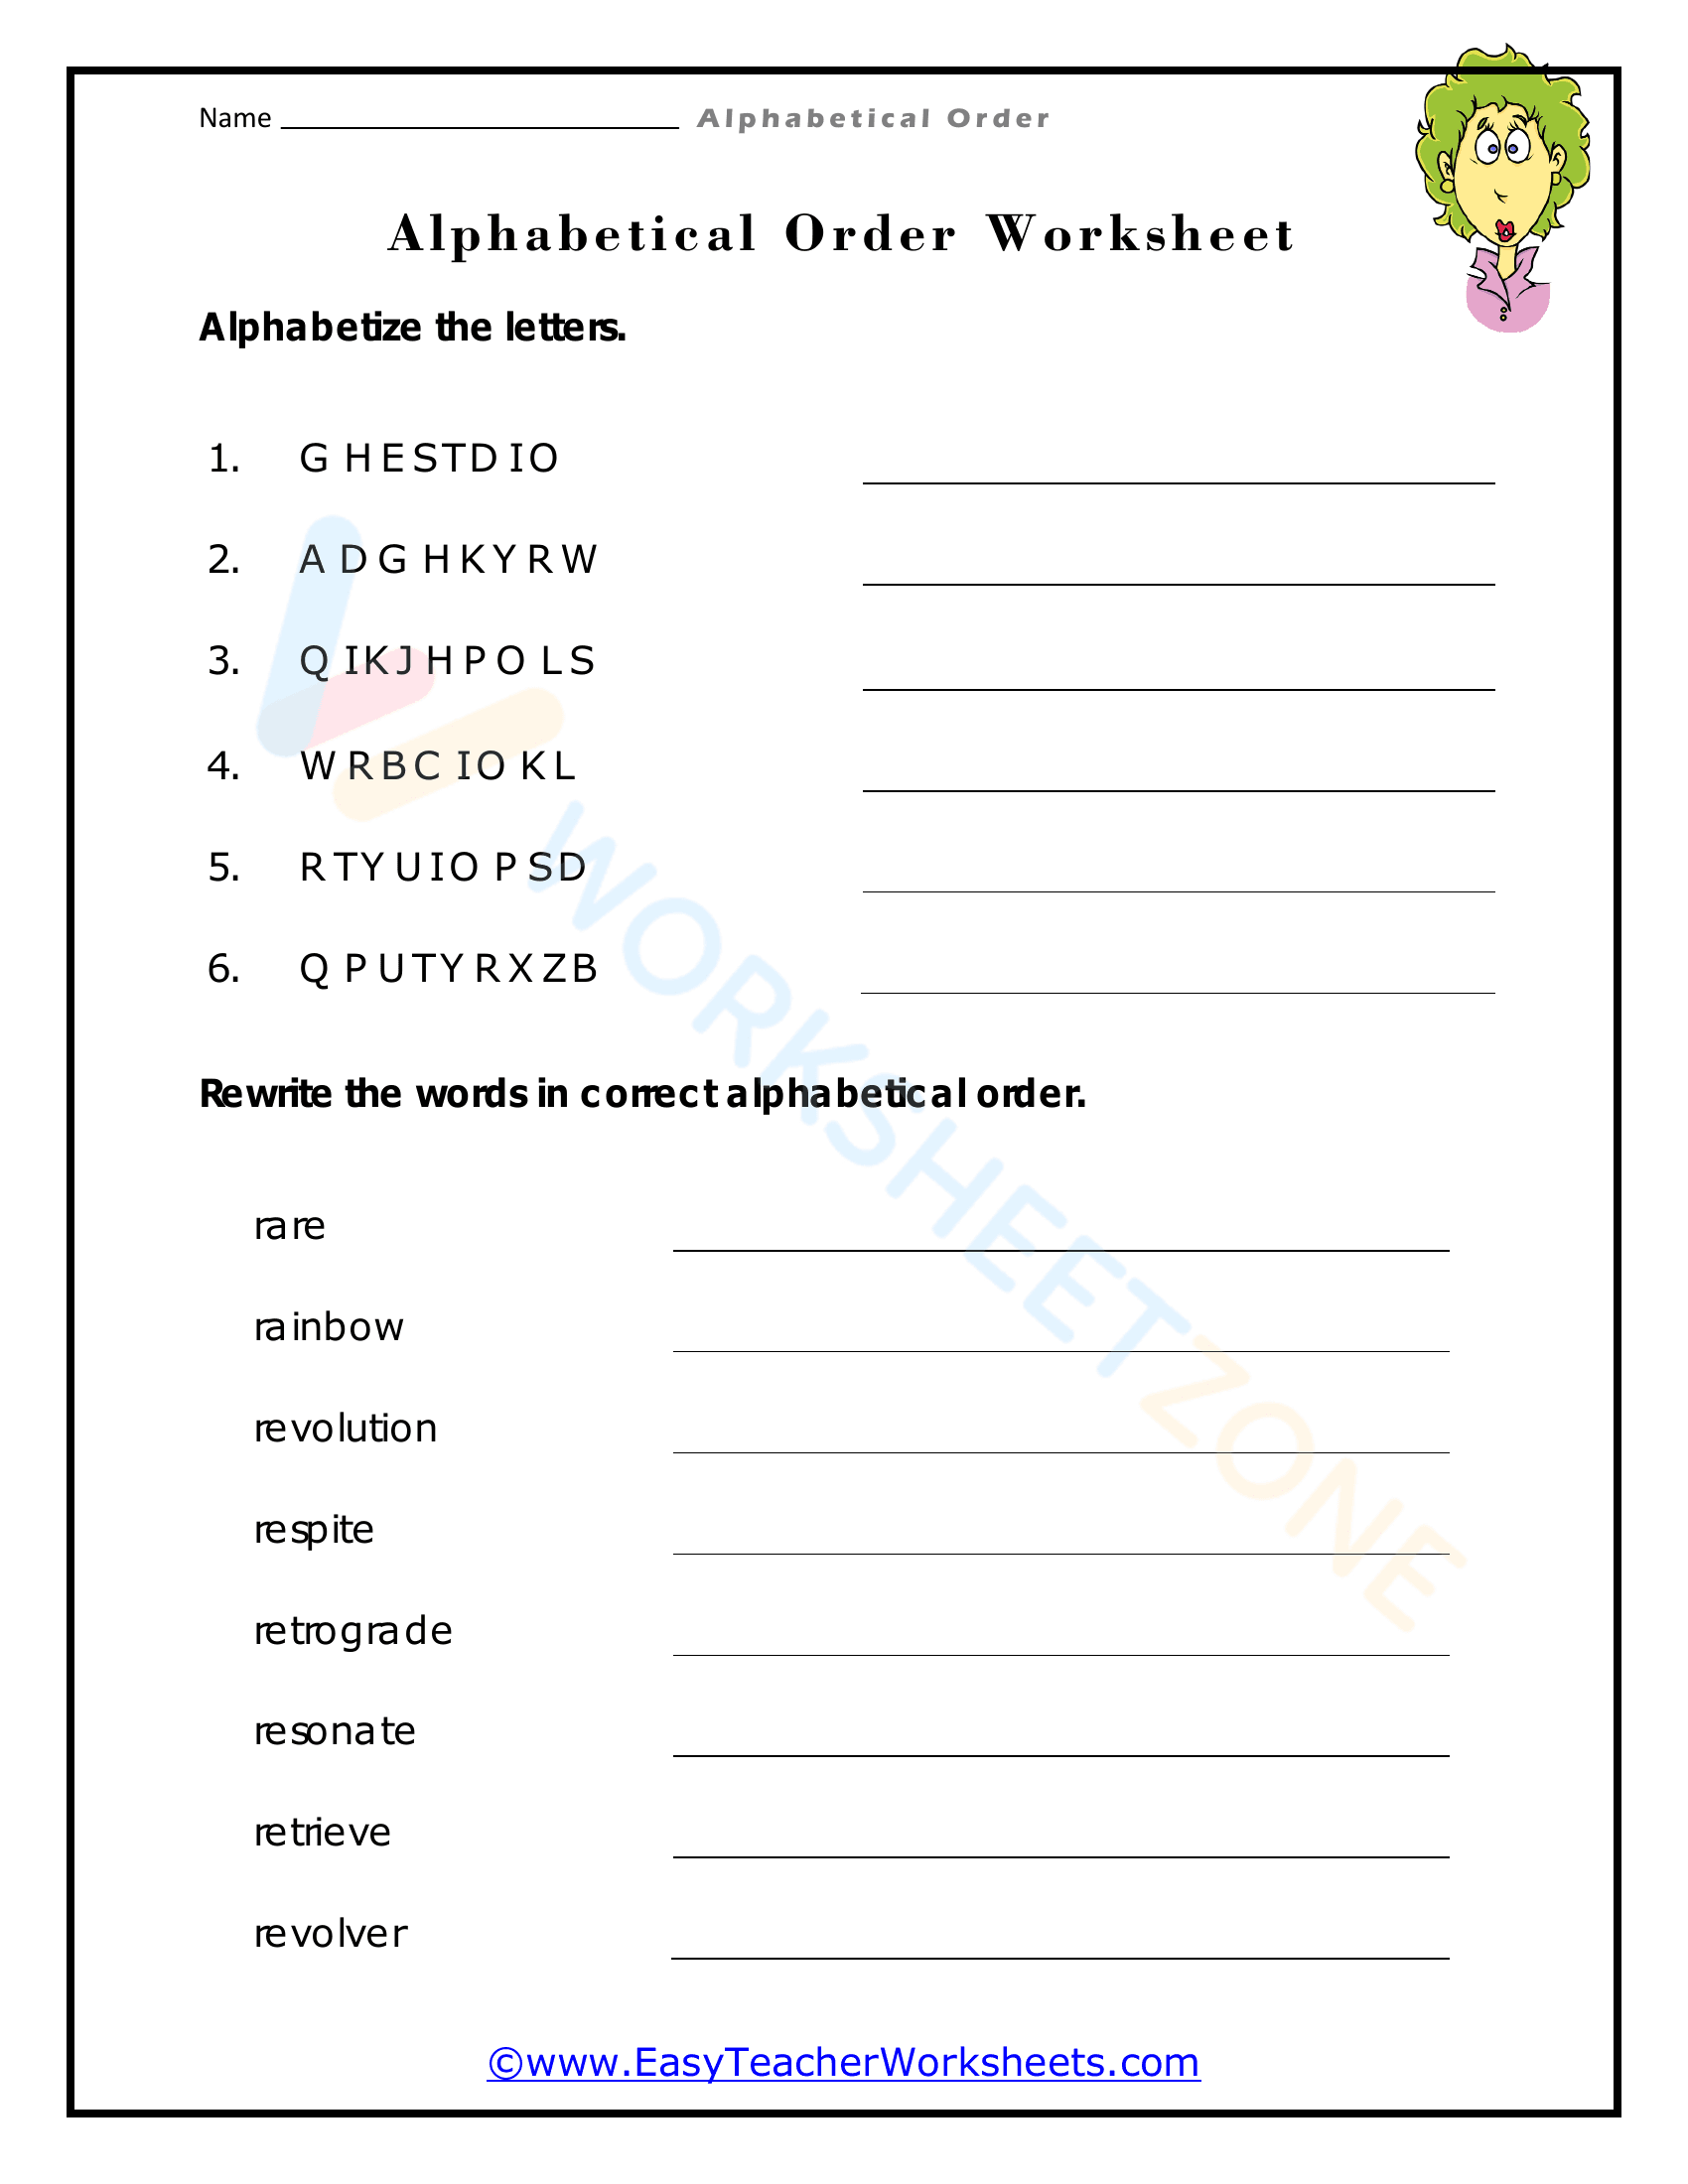 alphabetical order worksheets 4